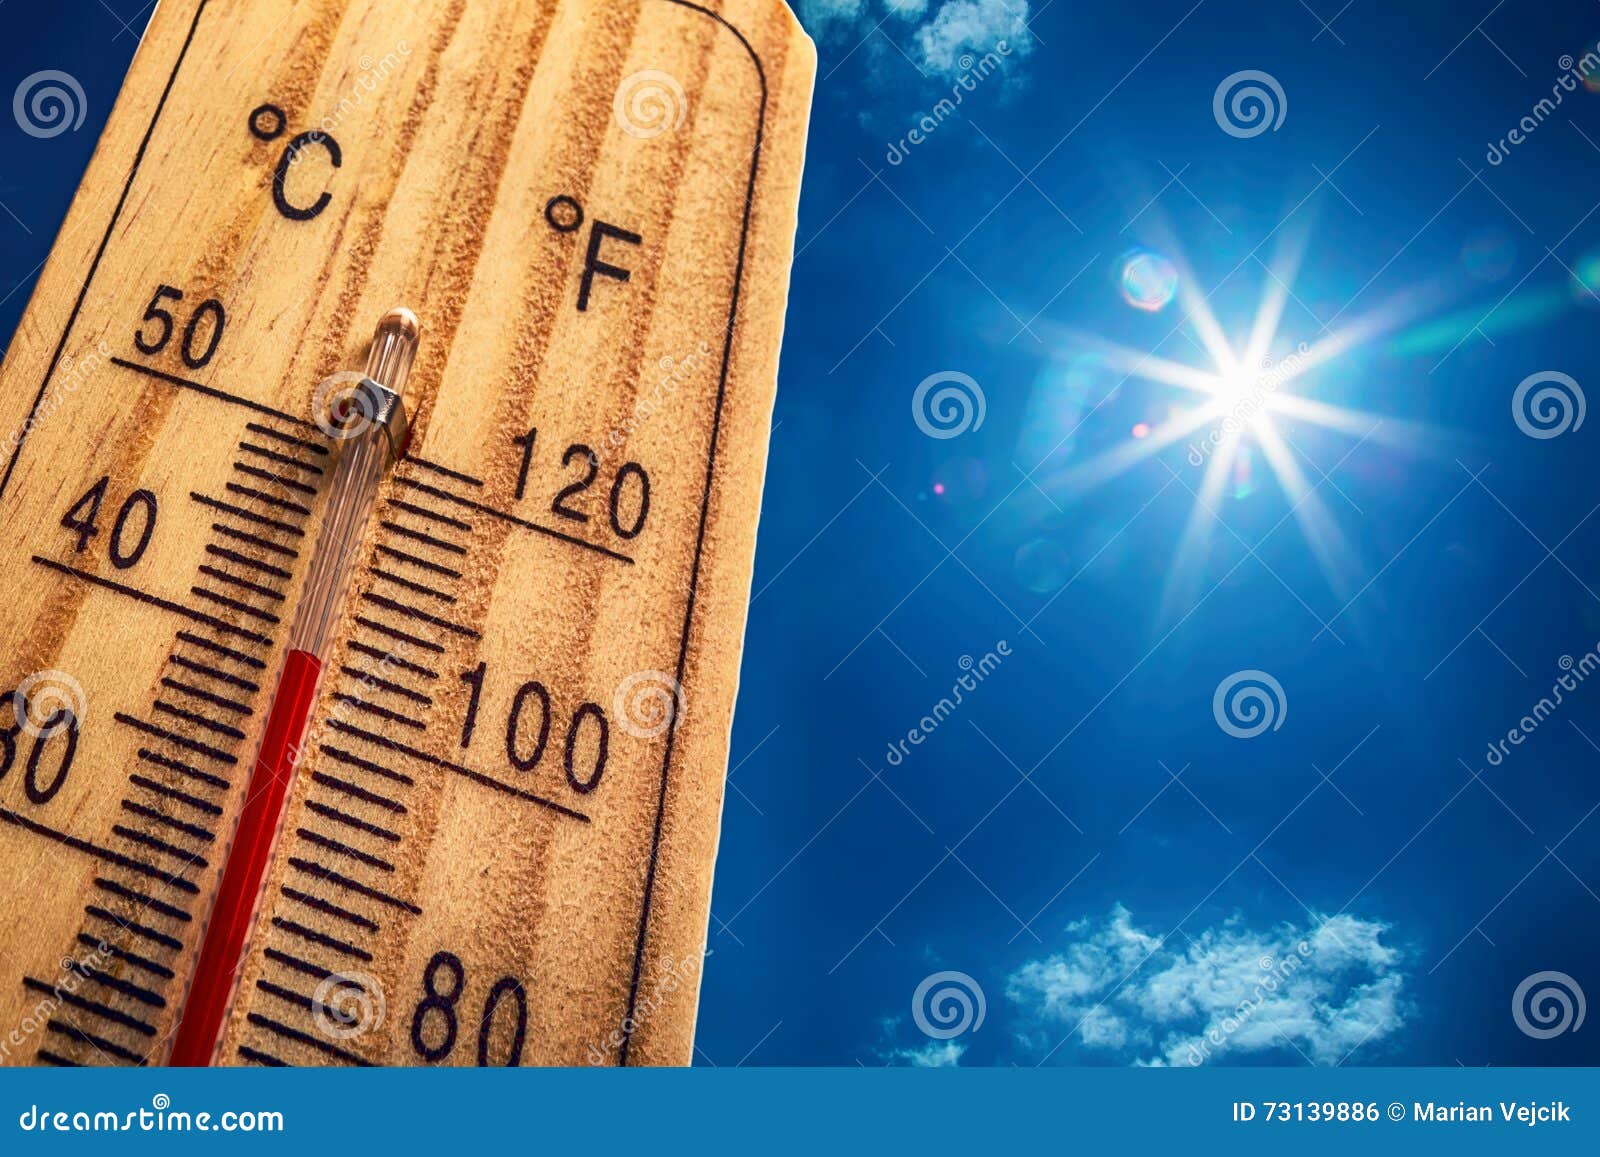 Dia Quente De Verão. Termômetro De Celsius E Fahrenheit Na Areia